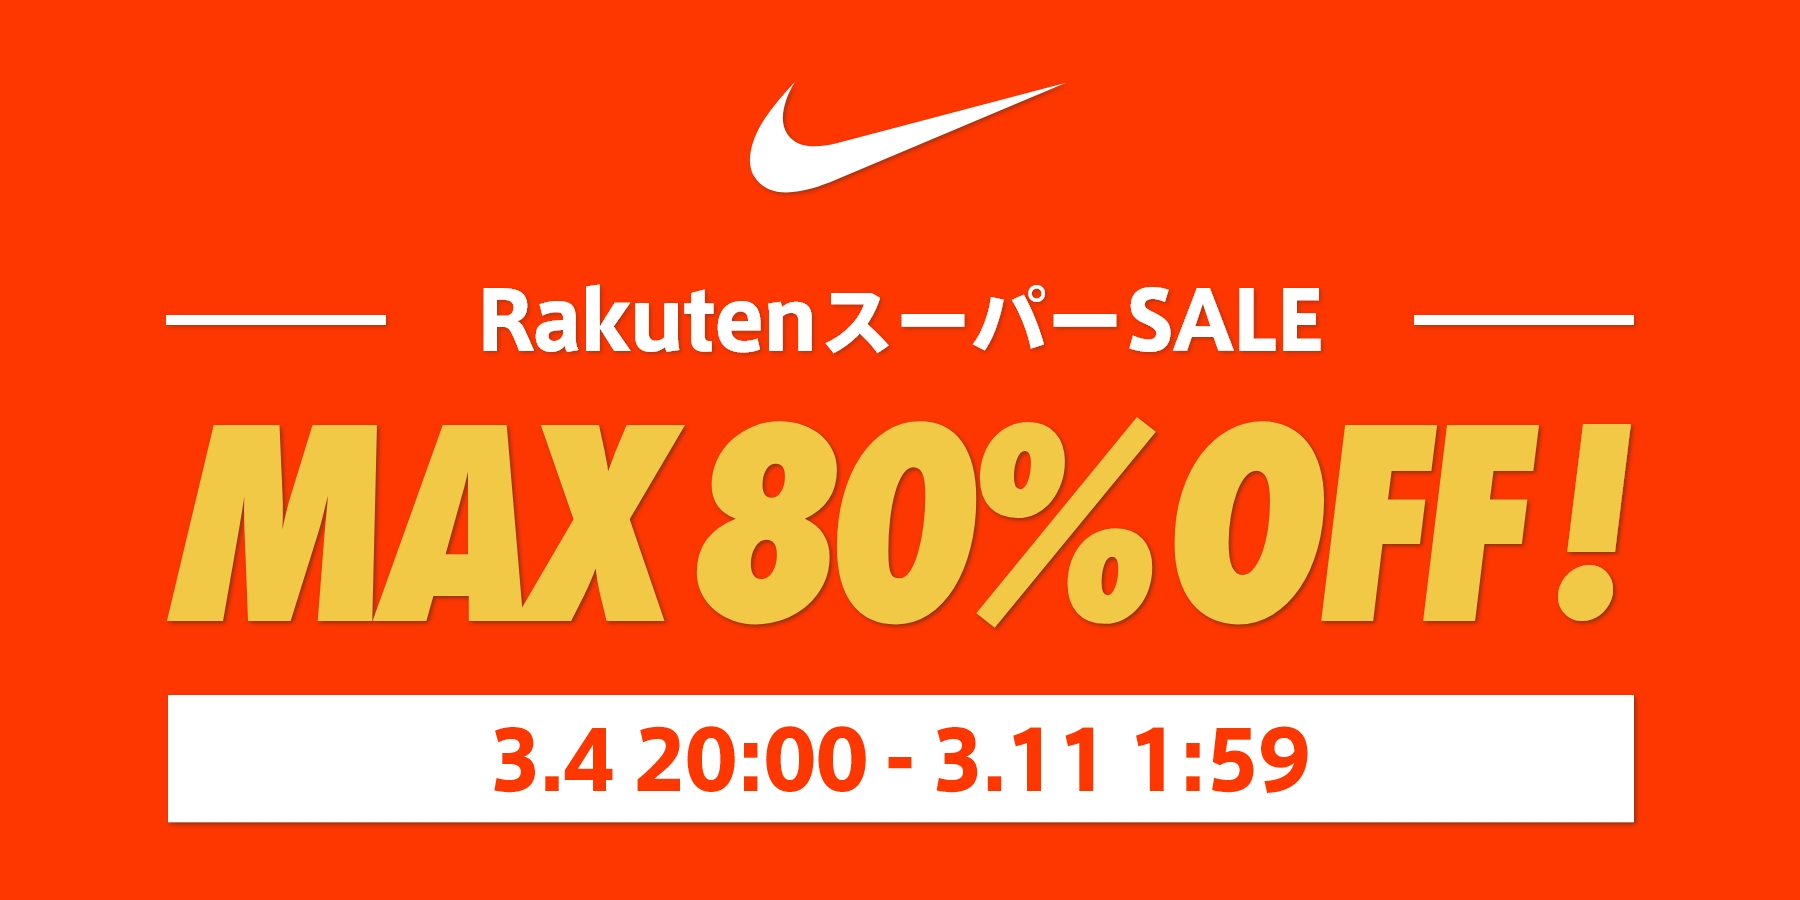 ナイキ RakutenスーパーSALE MAX80%OFF!